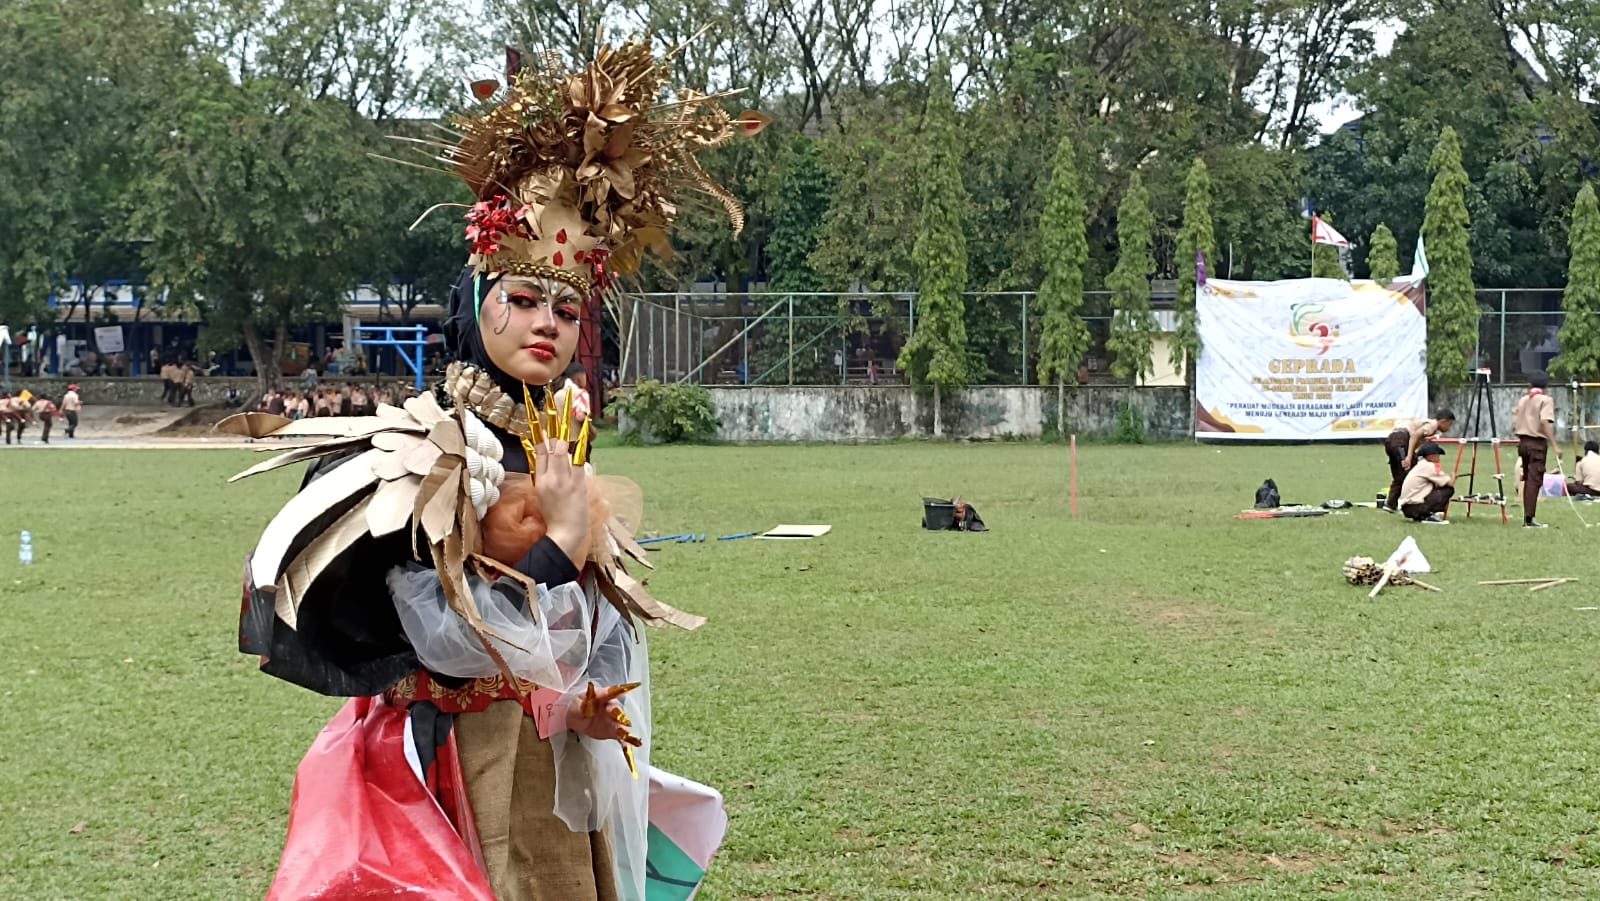 Kostum Unik, Kombinasikan Unsur Garuda dan Pramuka